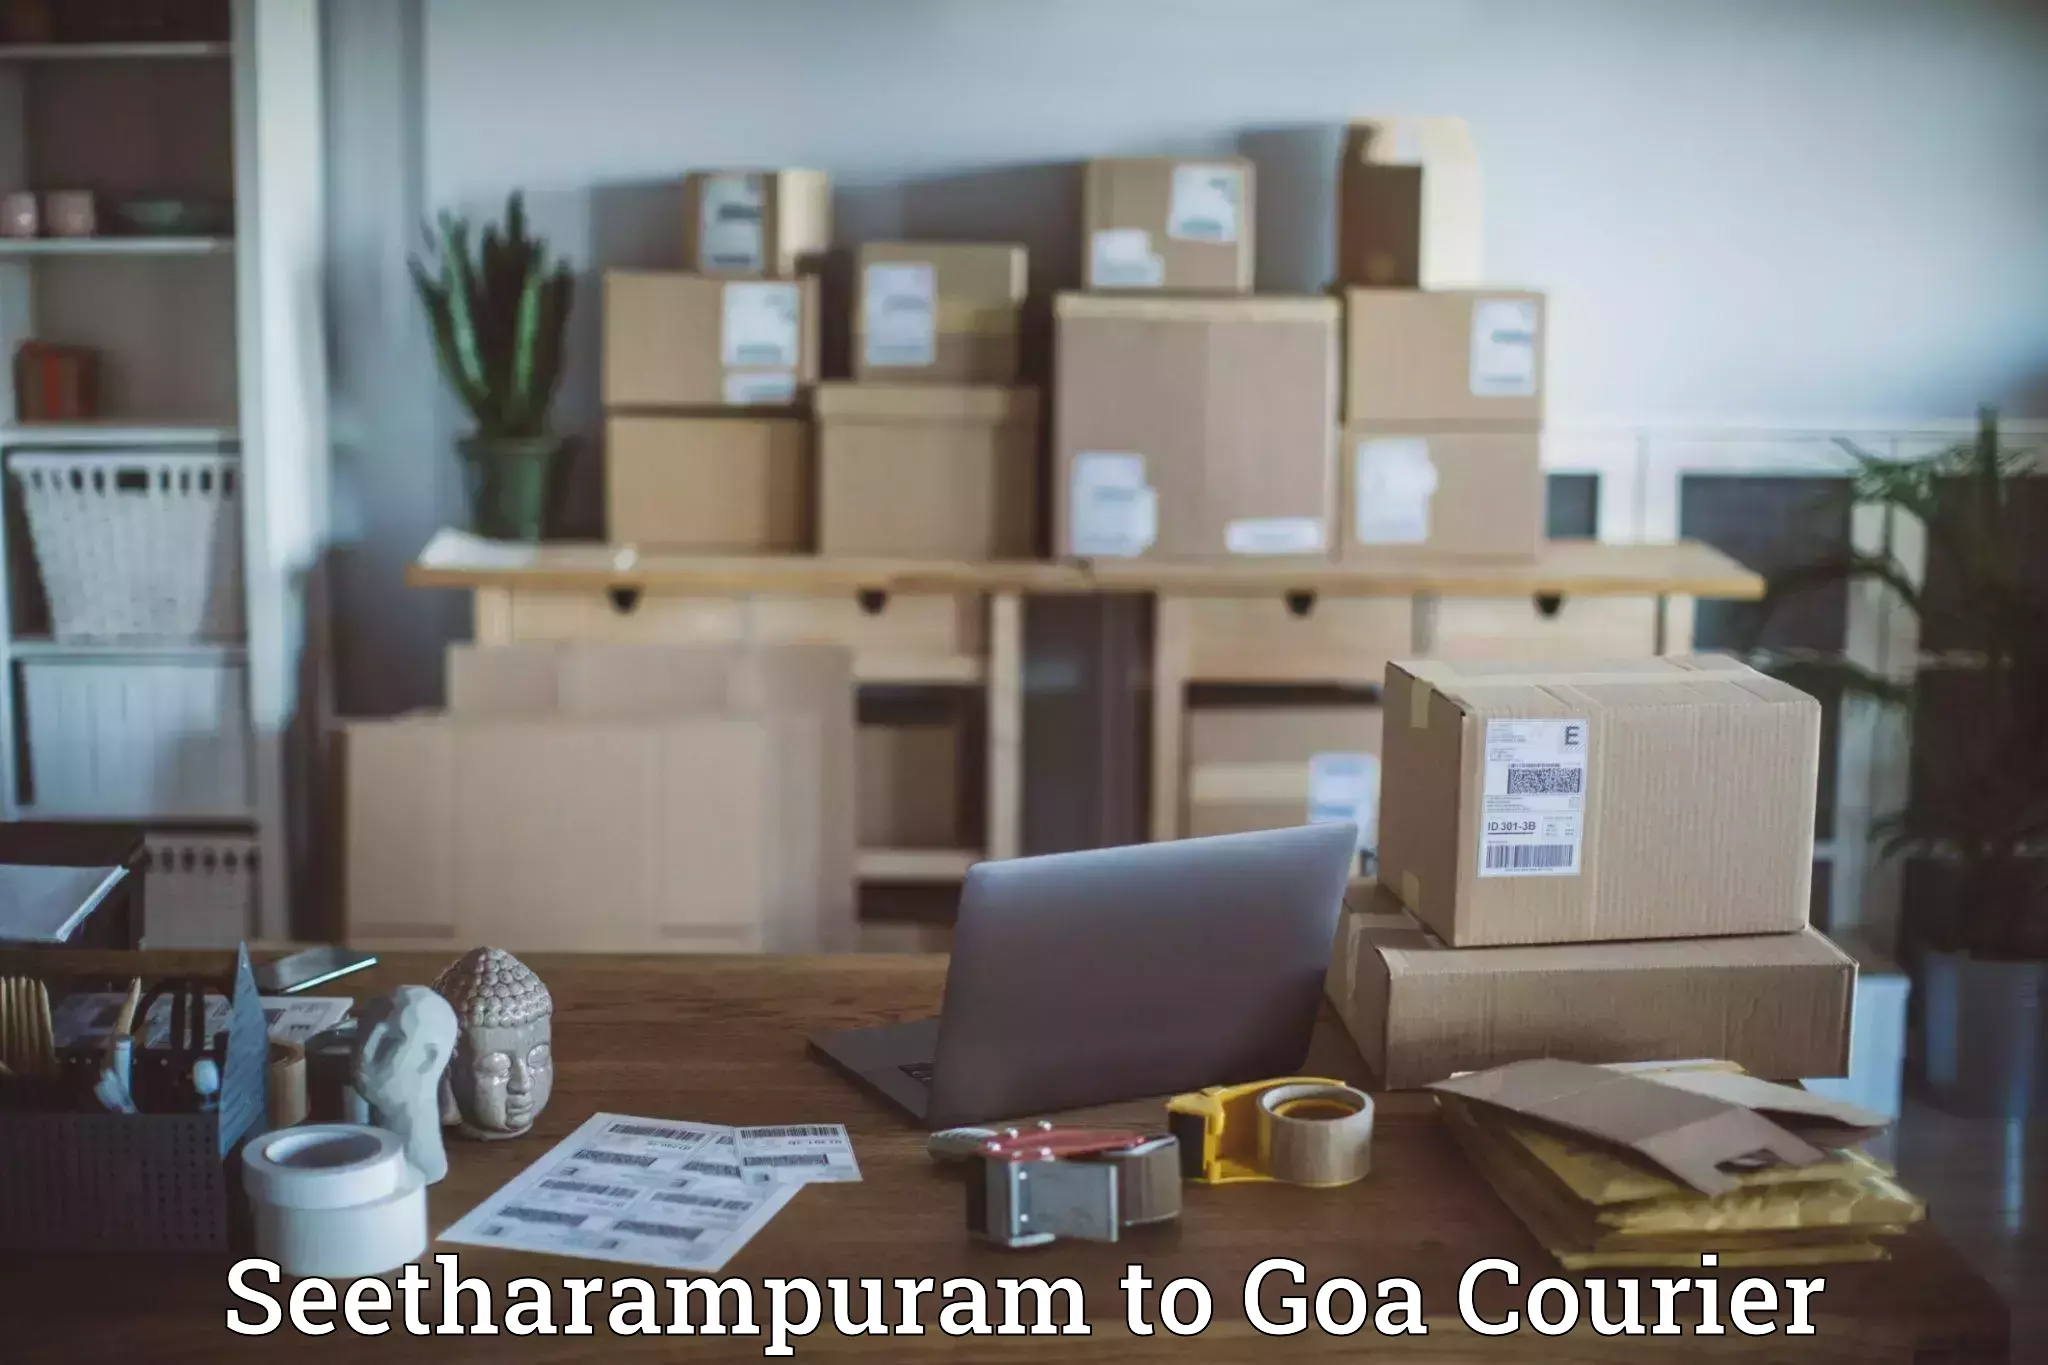 Residential courier service Seetharampuram to Mormugao Port